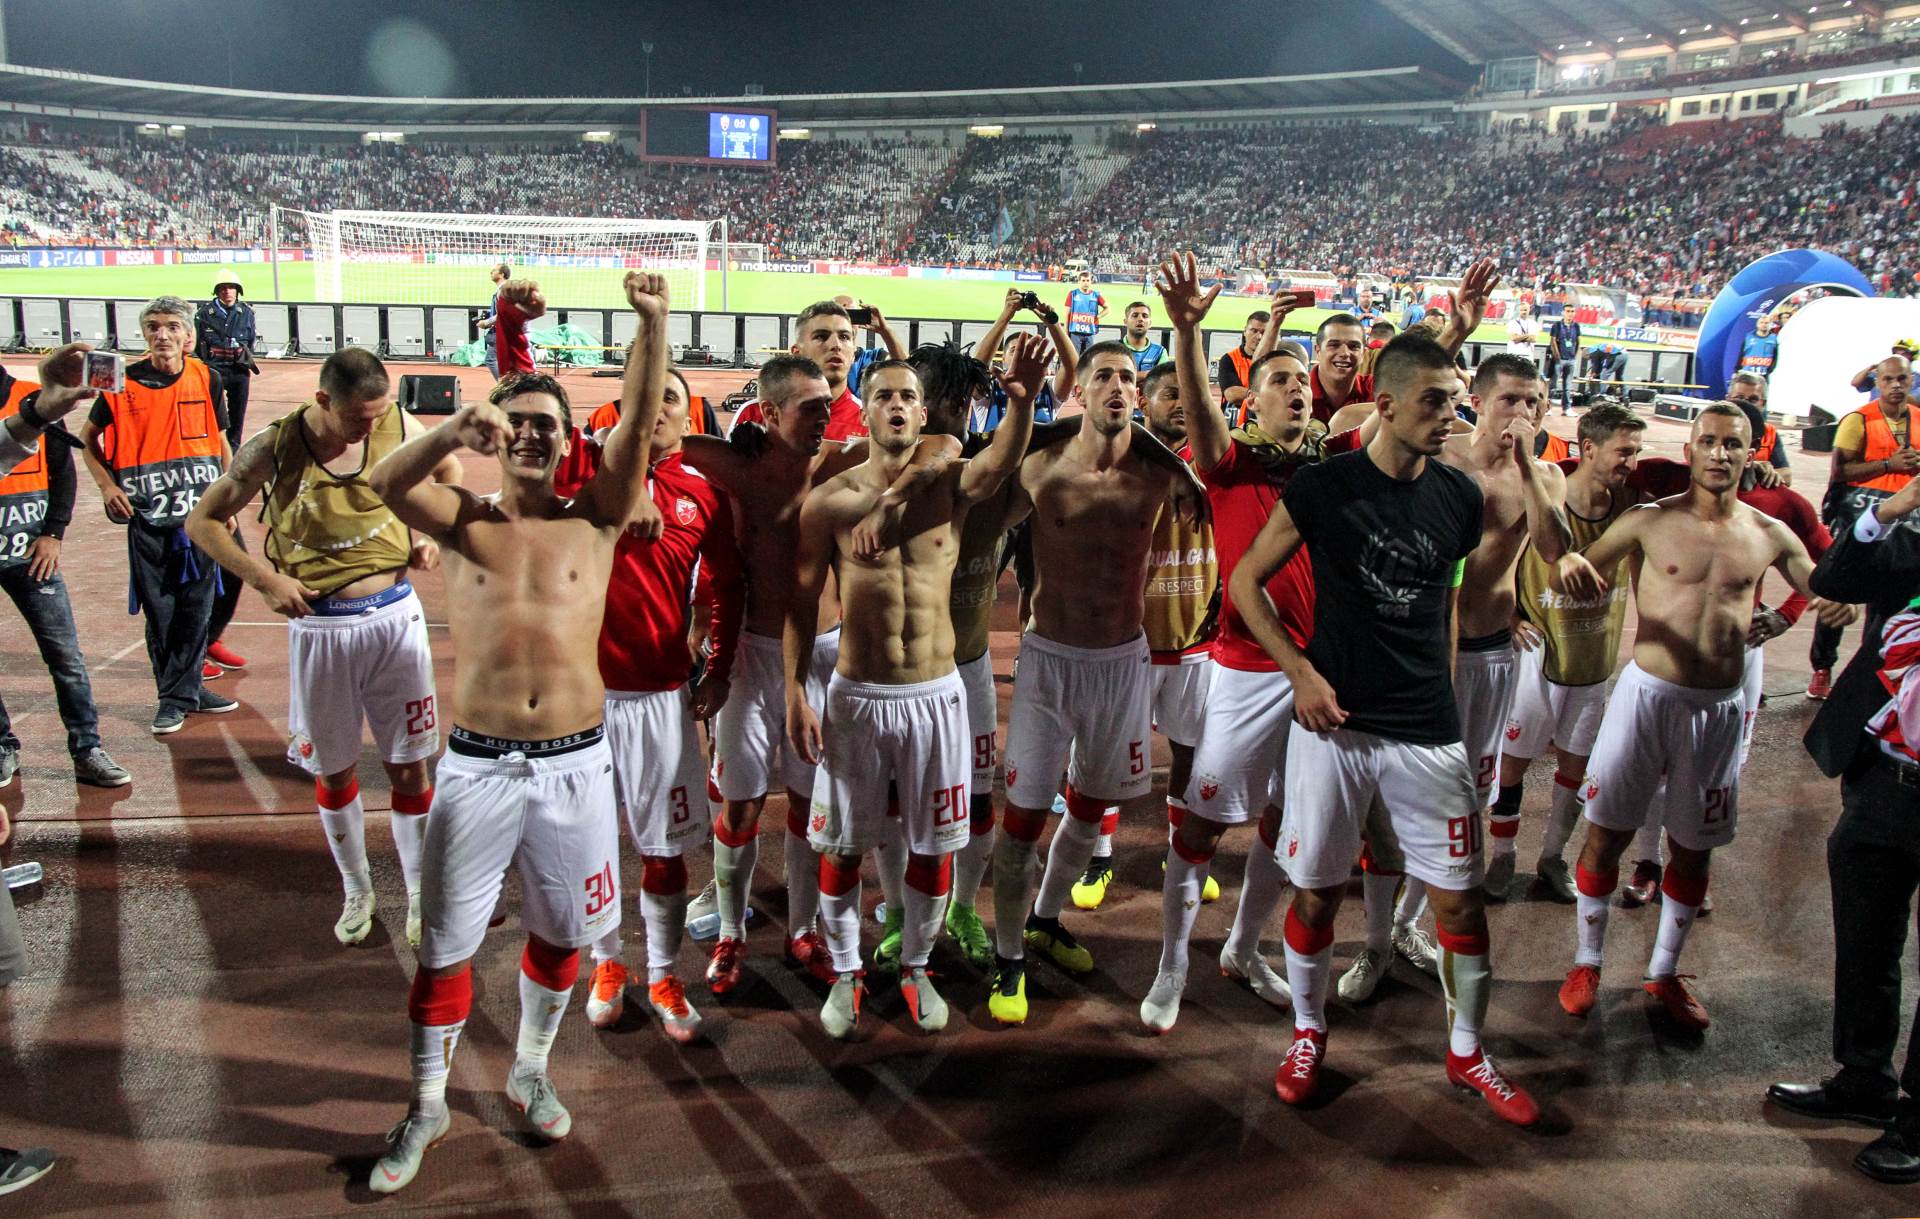  aukcija dresovi FK Crvena zvezda - cijena preko 500 evra 